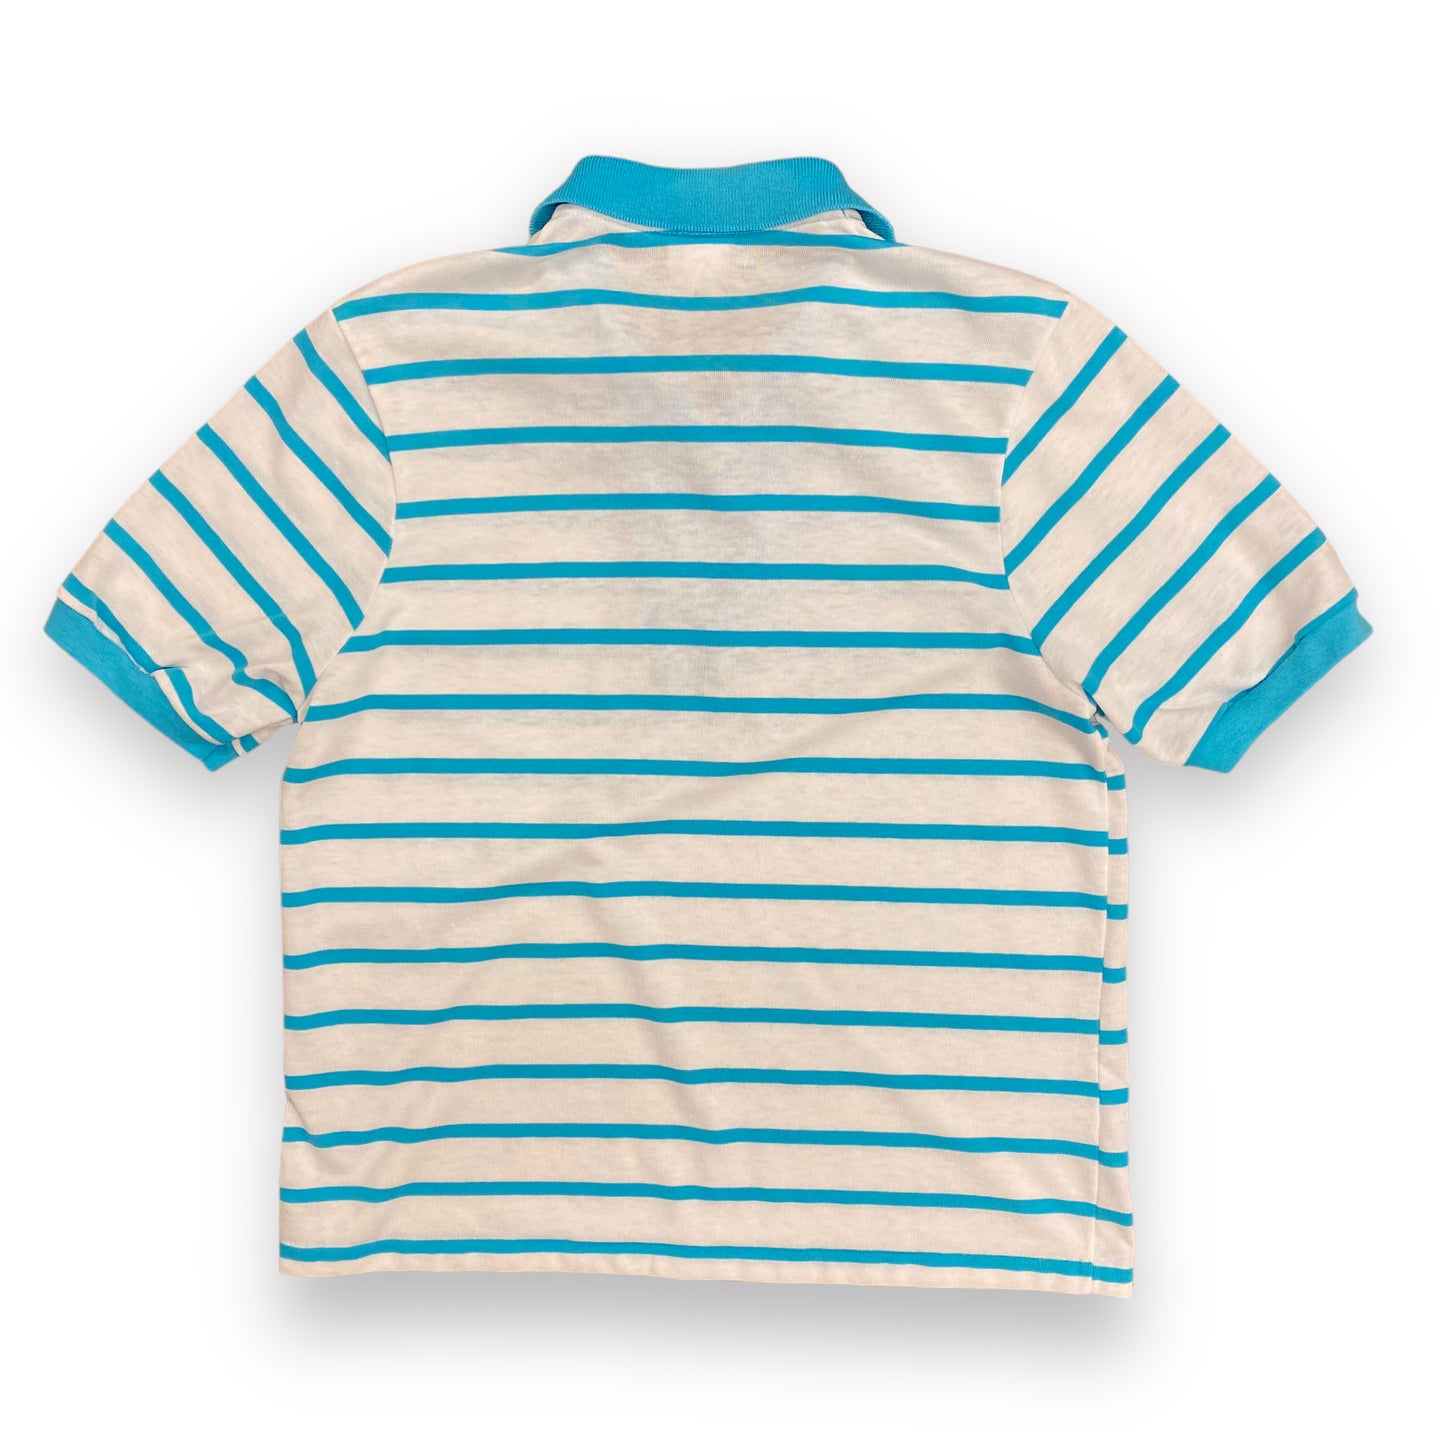 Vintage 1980s Wrangler Blue & White Striped Polo - Size XL (Fits Medium)